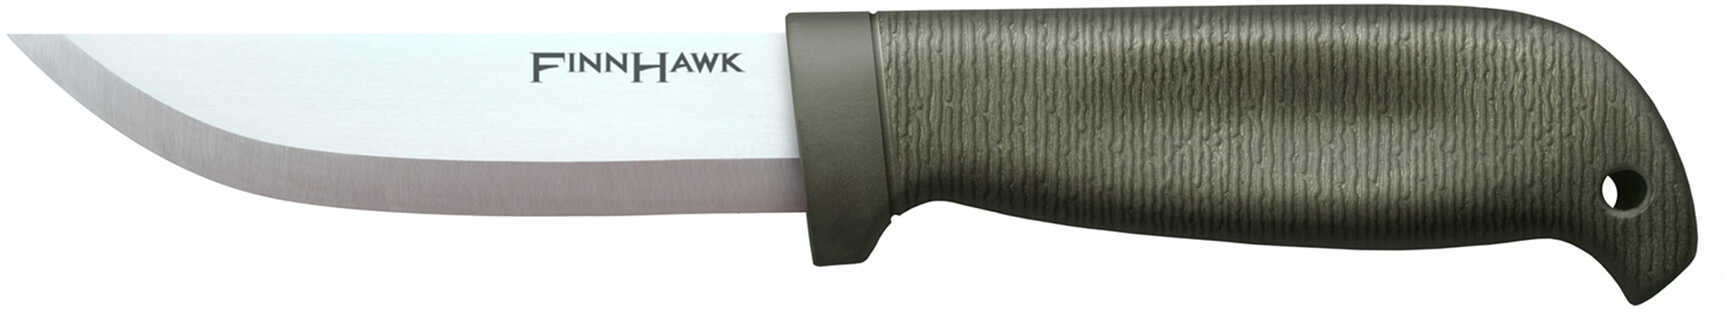 Cold Steel Finn Hawk Fixed Blade Model: 20NPK